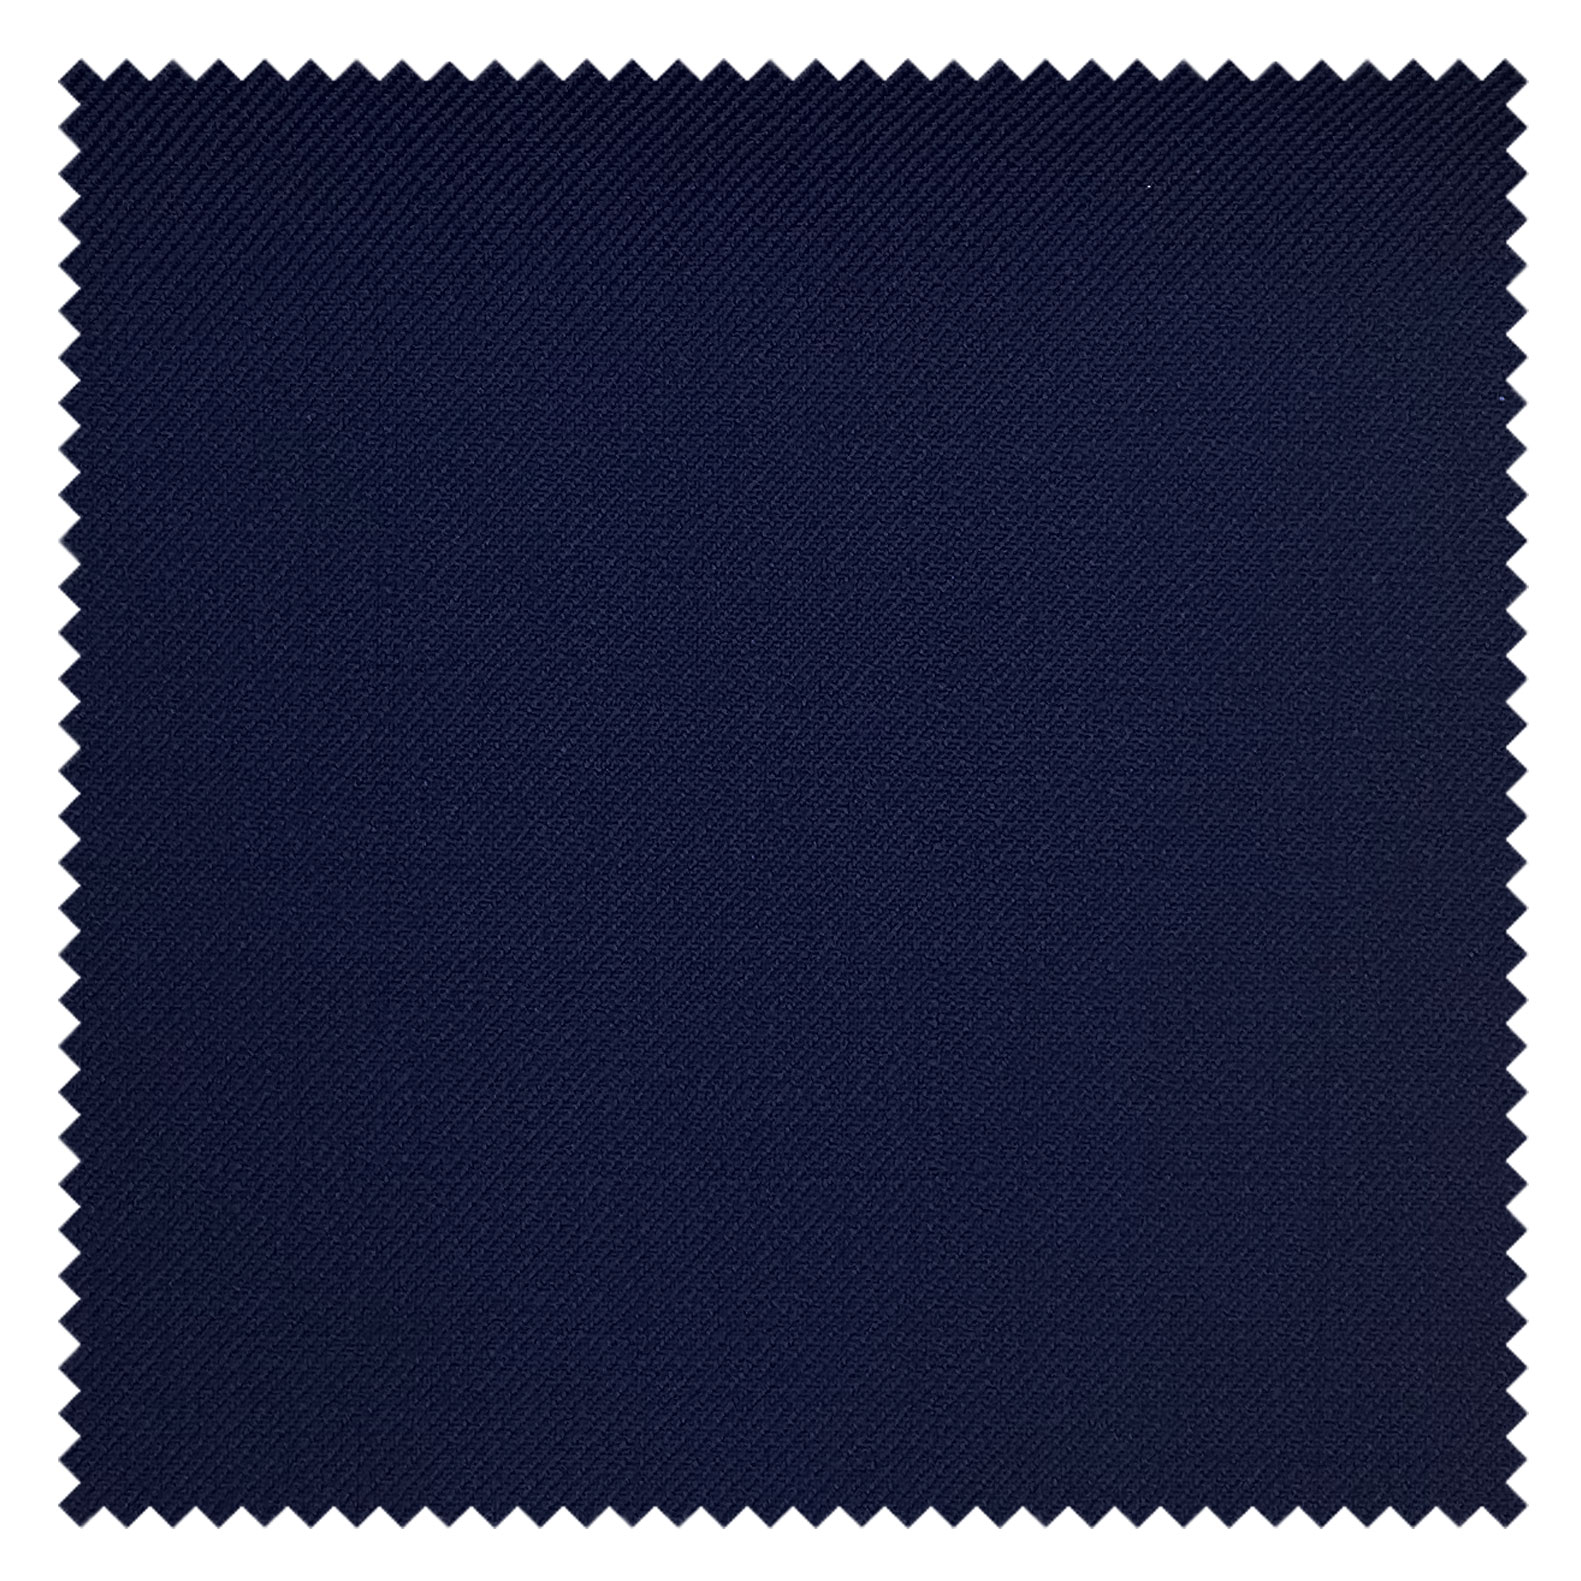 KINGMAN Super 130s Wool Luxury Fabric NAVY BLUE ผ้าตัดชุดสูท สีกรมน้ำเงิน กางเกง ผู้ชาย ผ้าตัดเสื้อ ยูนิฟอร์ม ผ้าวูล ผ้าคุณภาพดี กว้าง 60 นิ้ว ยาว 1 เมตร